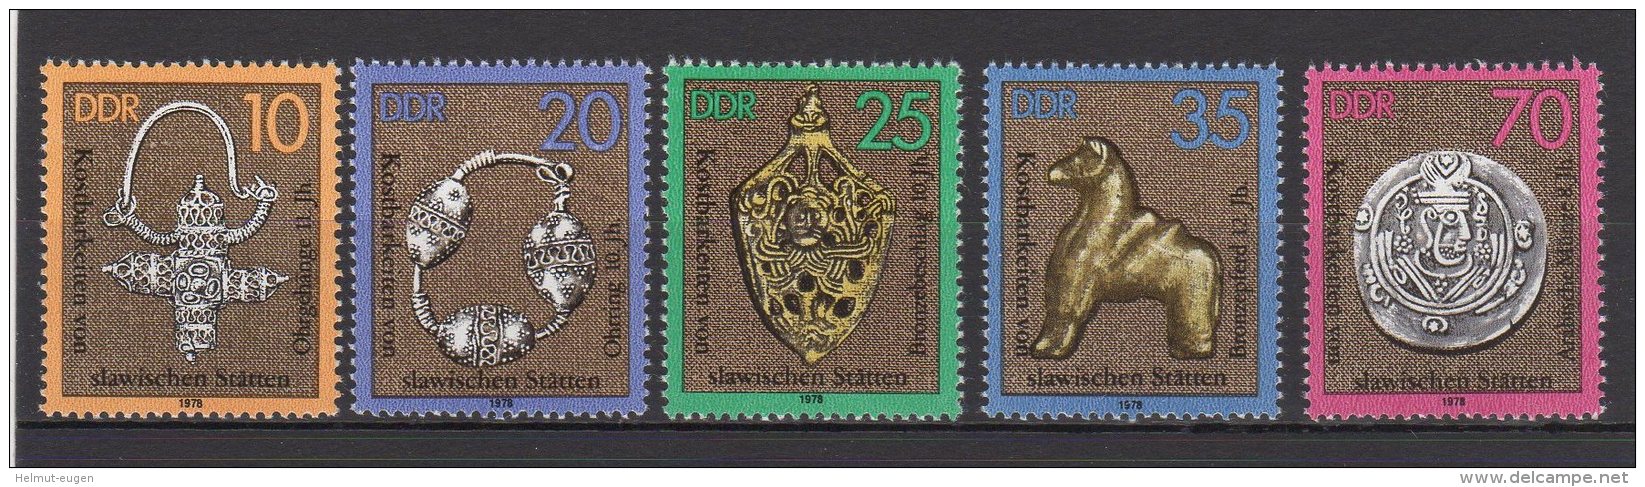 MiNr. 2303 - 2307 Deutschland Deutsche Demokratische Republik    1978, 21. Febr. Kostbarkeiten Von Slawischen Stätten. - Unused Stamps